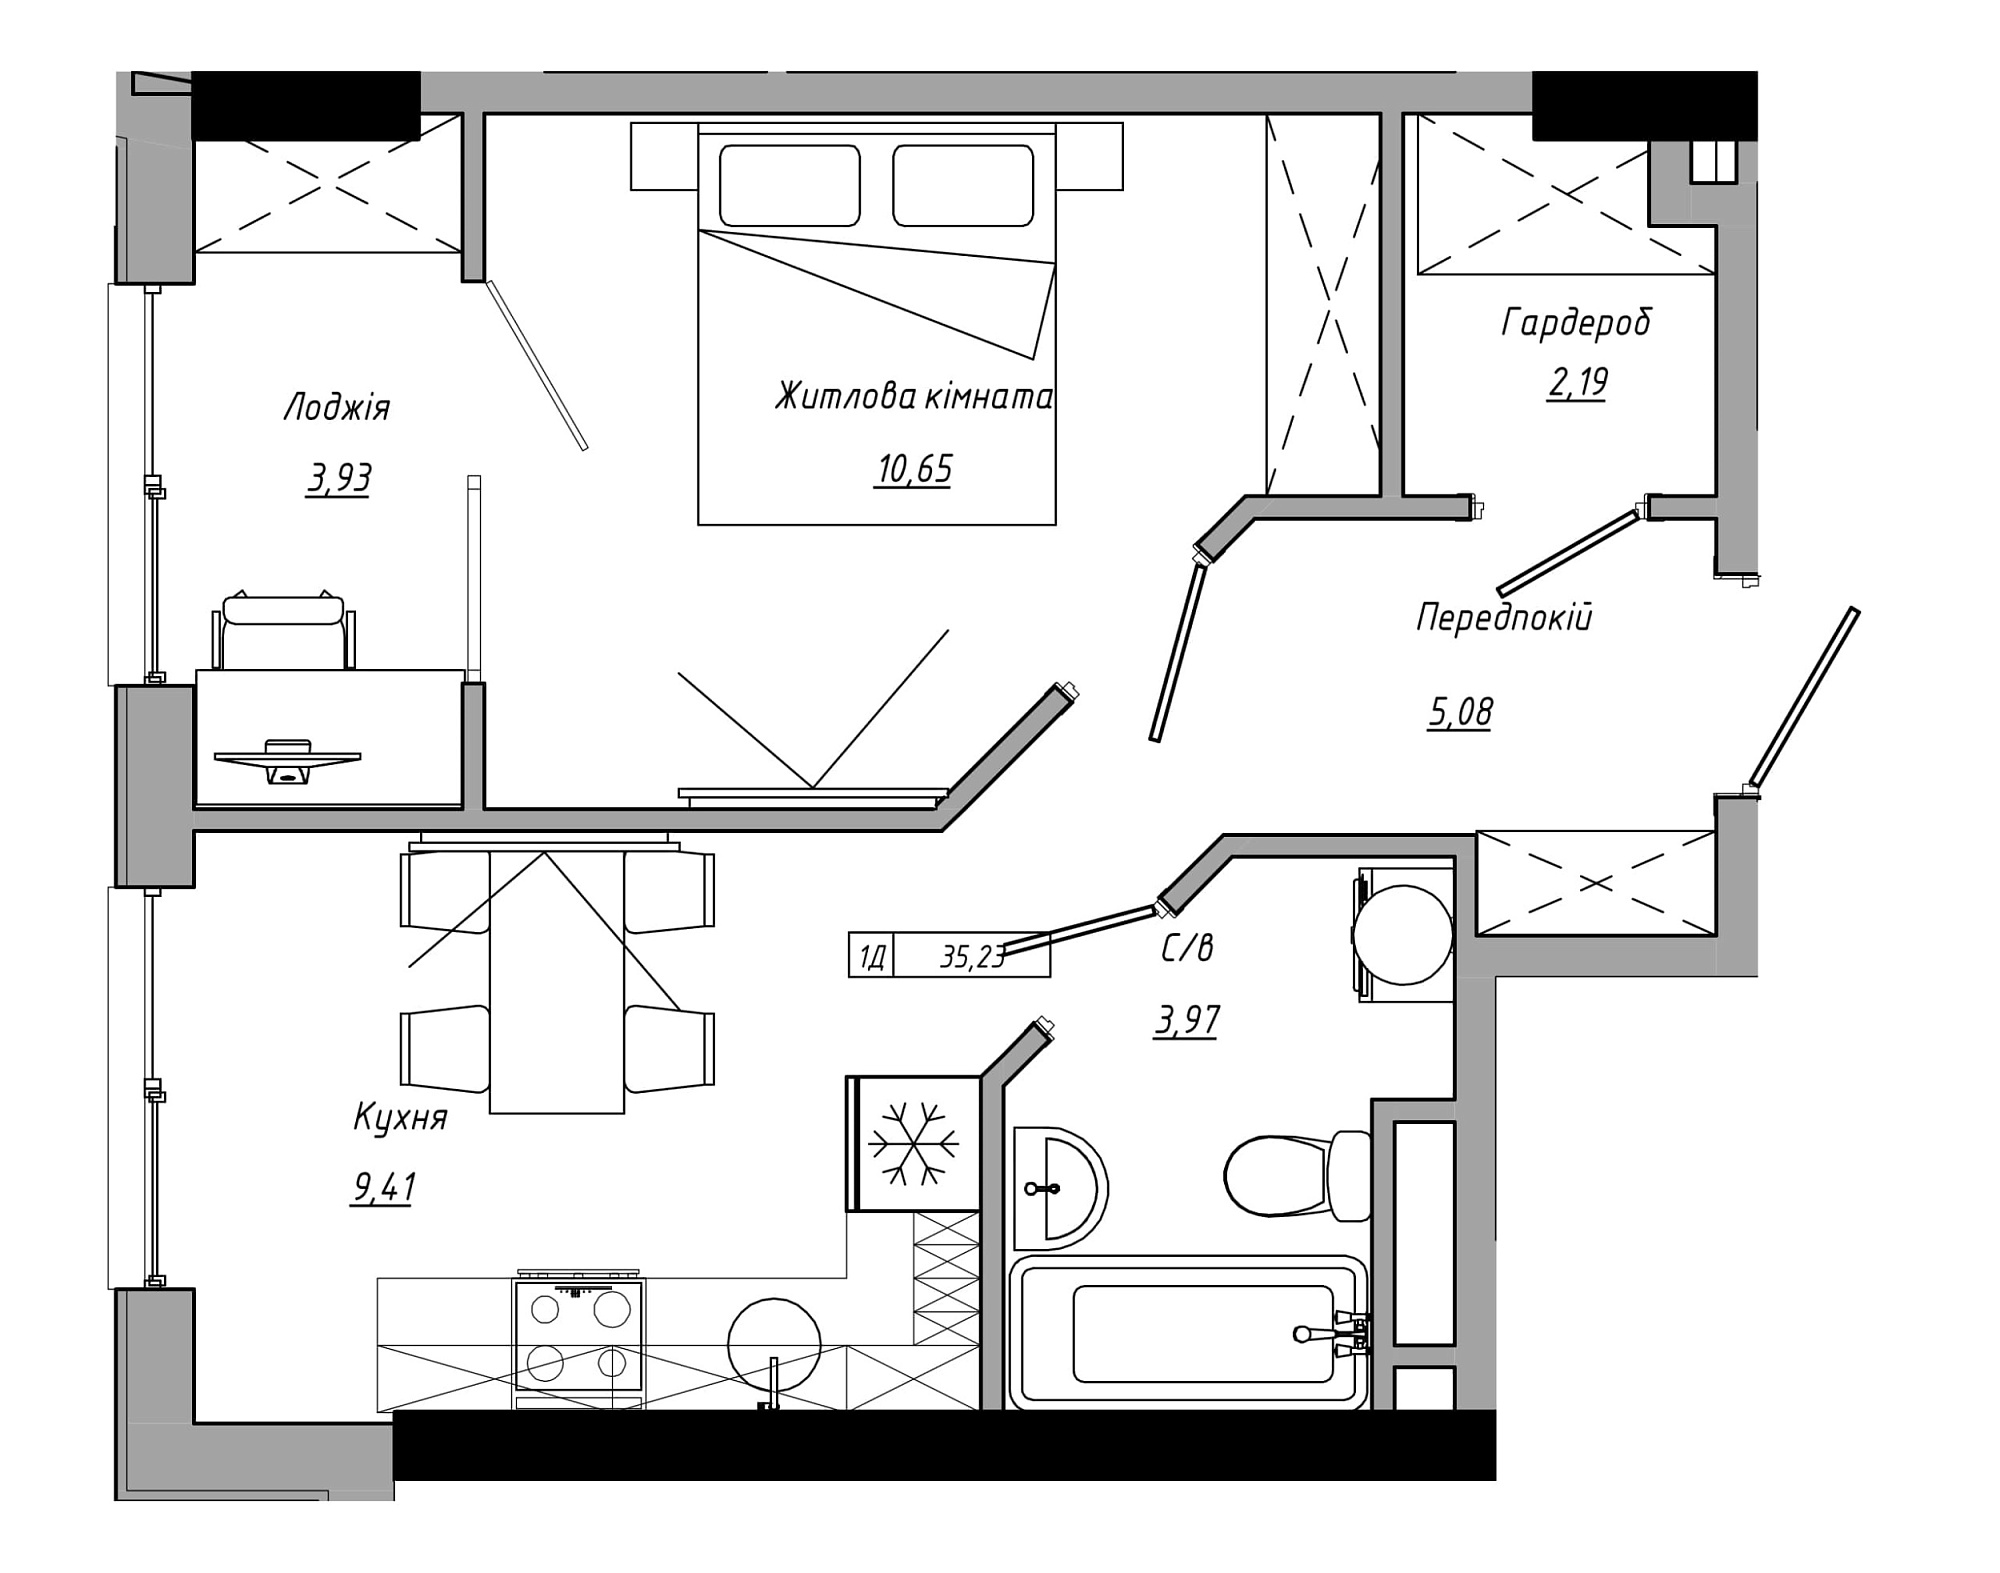 Планировка 1-к квартира площей 35.23м2, AB-21-06/00006.